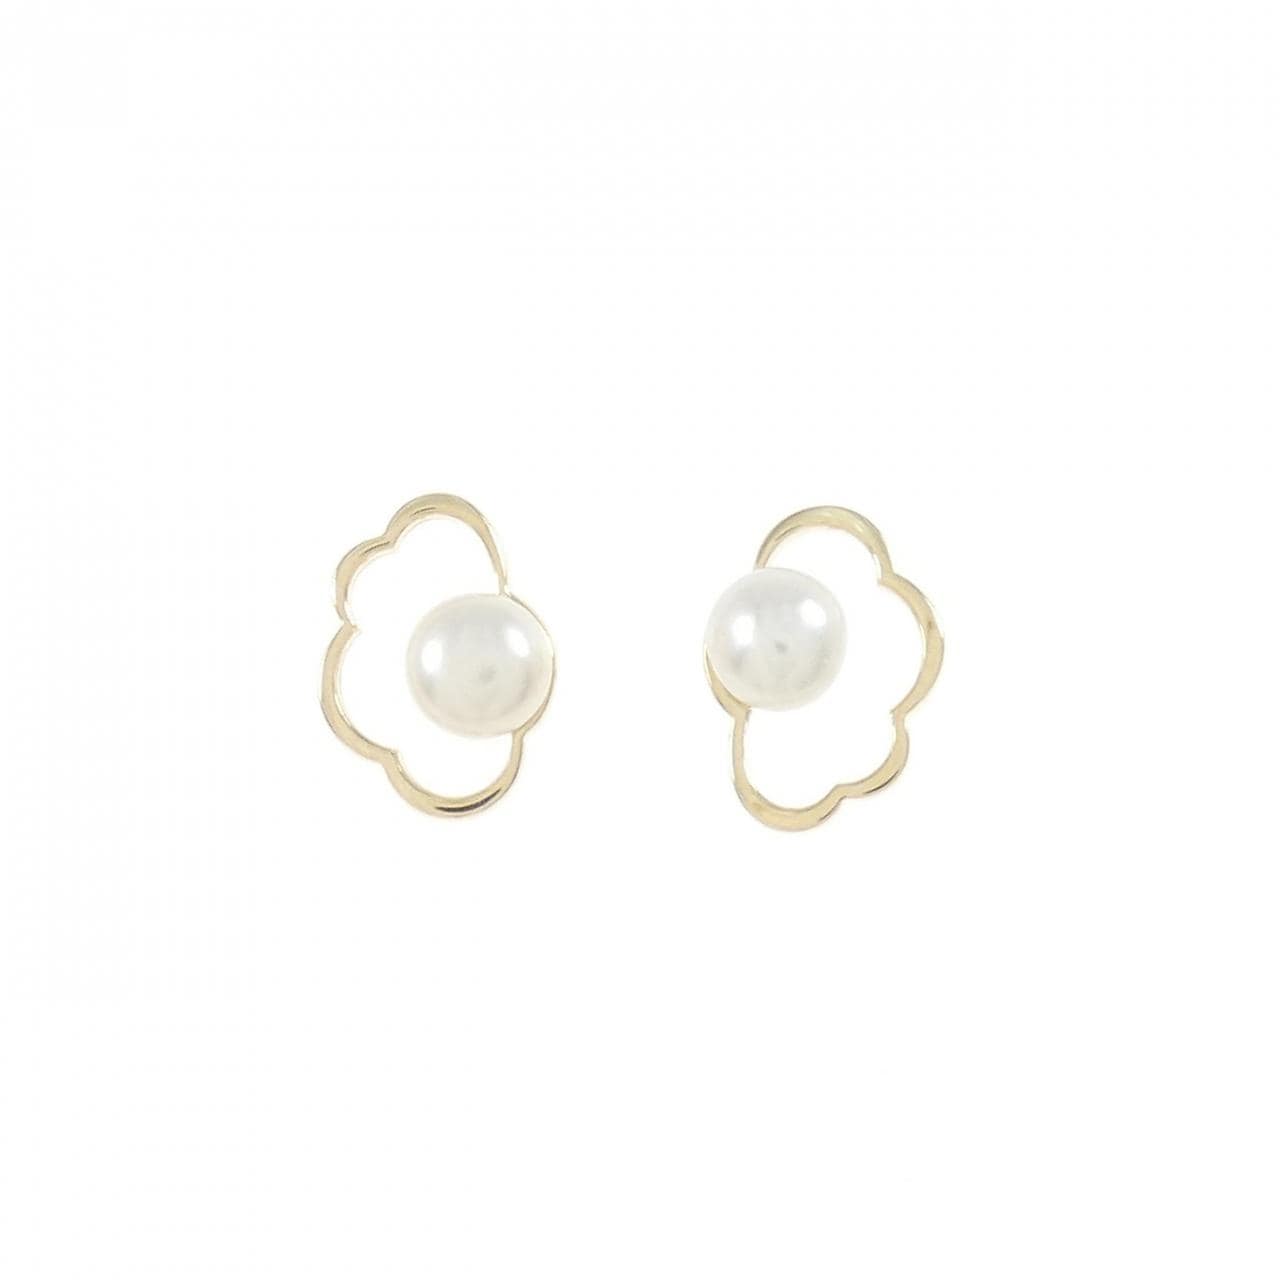 STAR JEWELRY freshwater pearl earrings